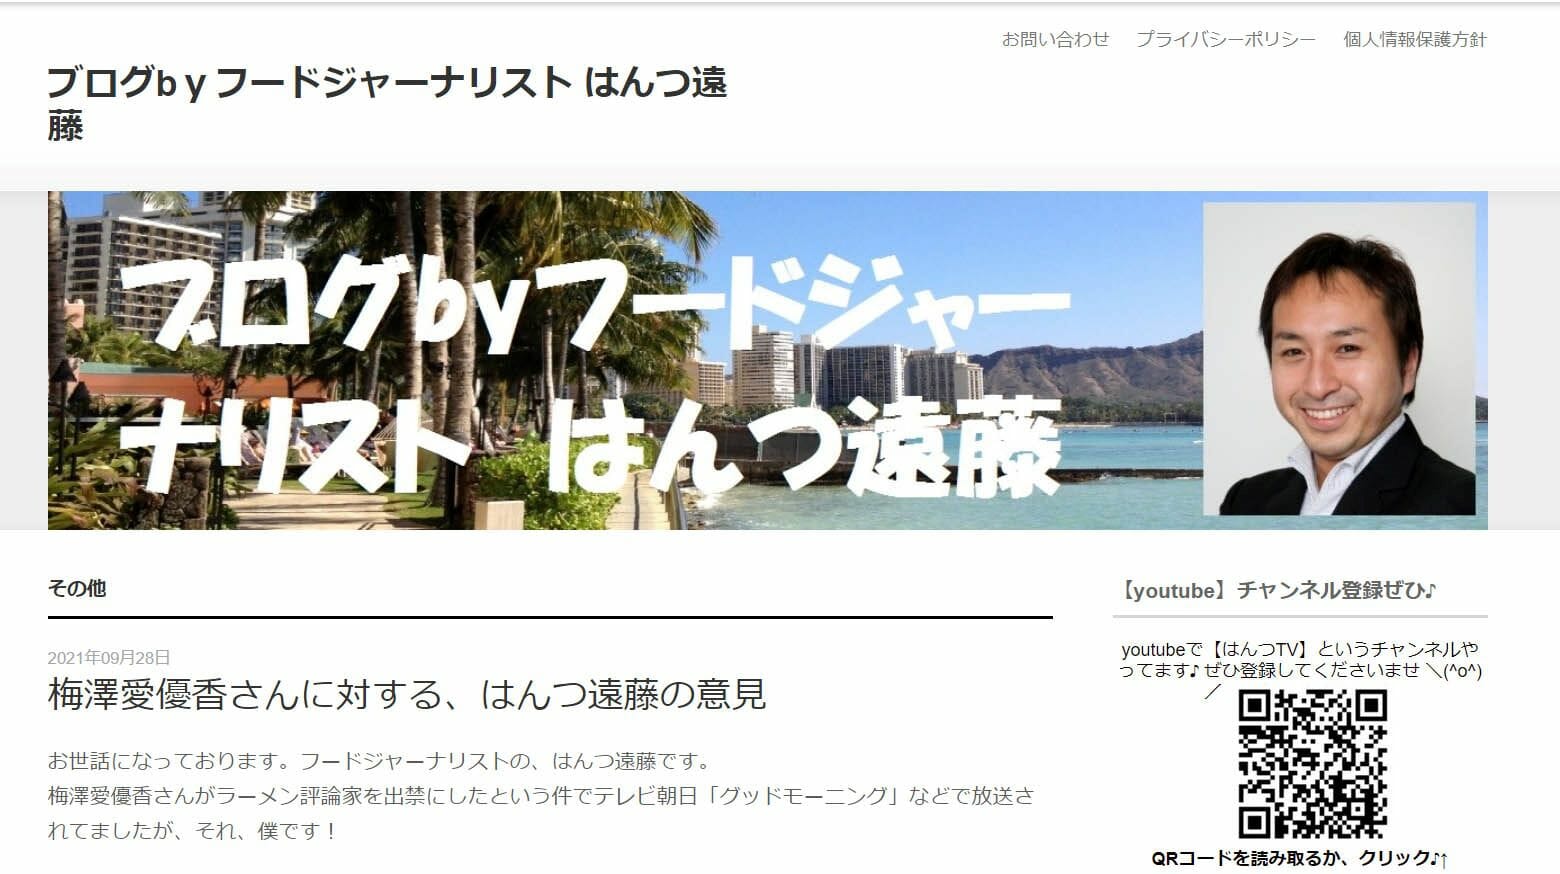 梅澤愛優香さんへのラーメン評論家のセクハラ的反論が「読むに堪えない」と物議